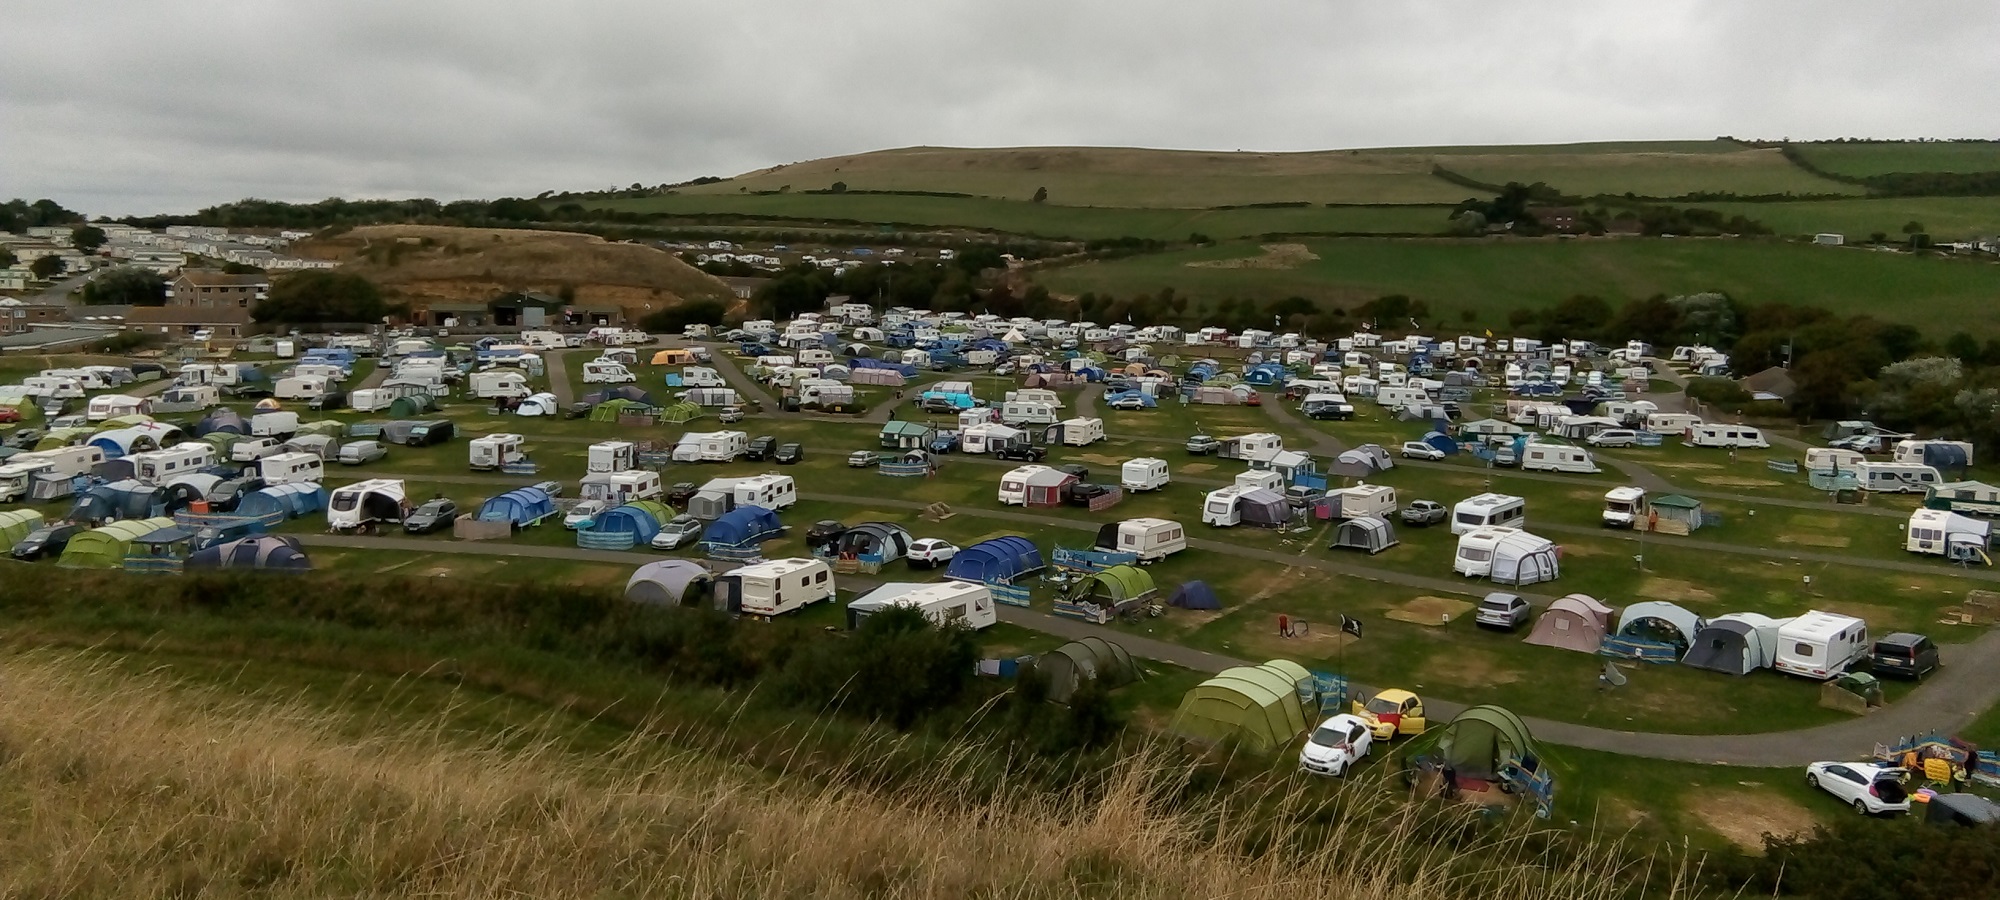 Campsite rural summer tents